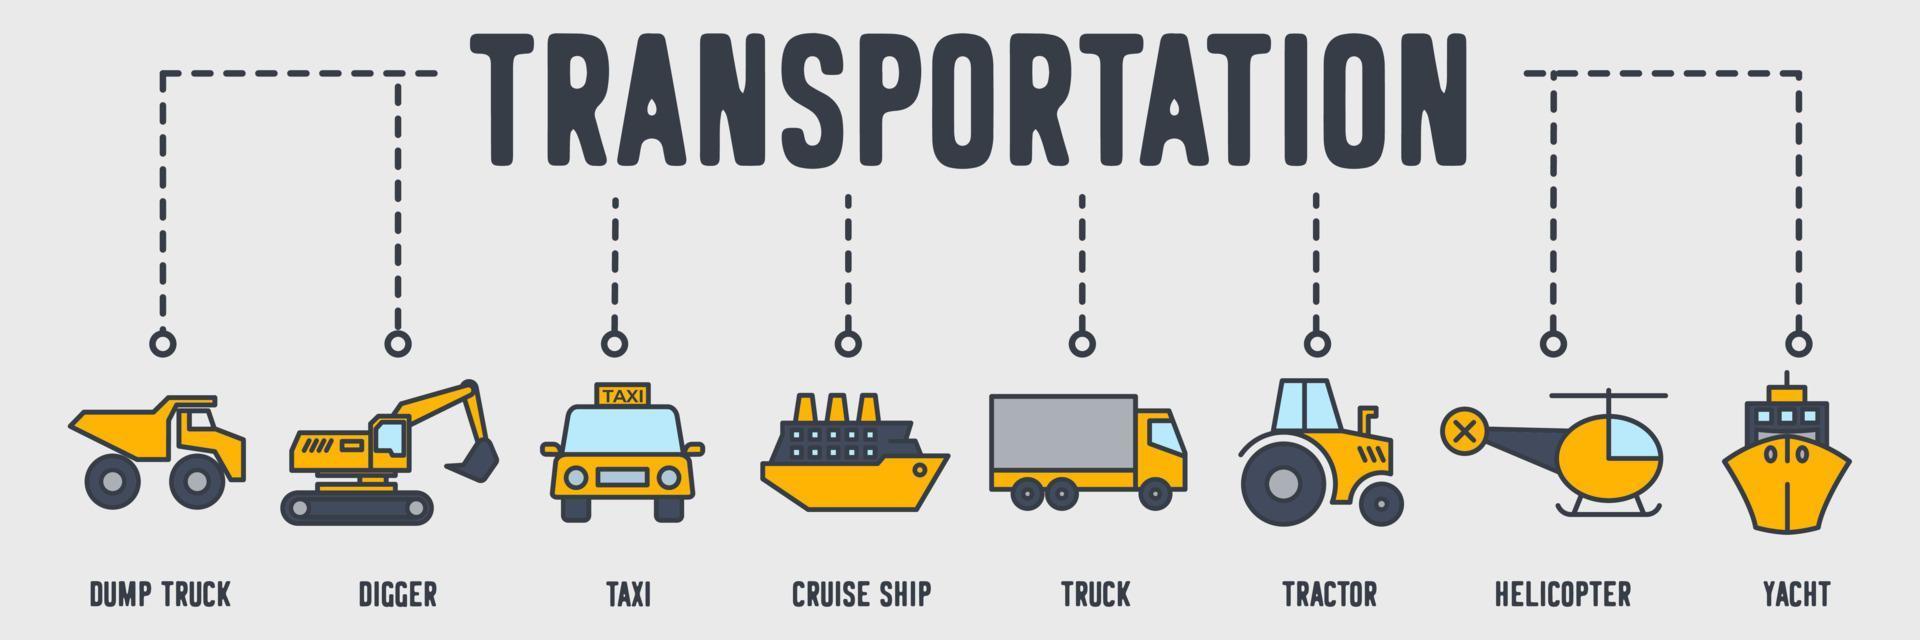 icona web banner veicolo di trasporto. autocarro con cassone ribaltabile, tram, taxi, nave da crociera, camion, trattore, elicottero, yacht, concetto di illustrazione vettoriale del carrello elevatore.